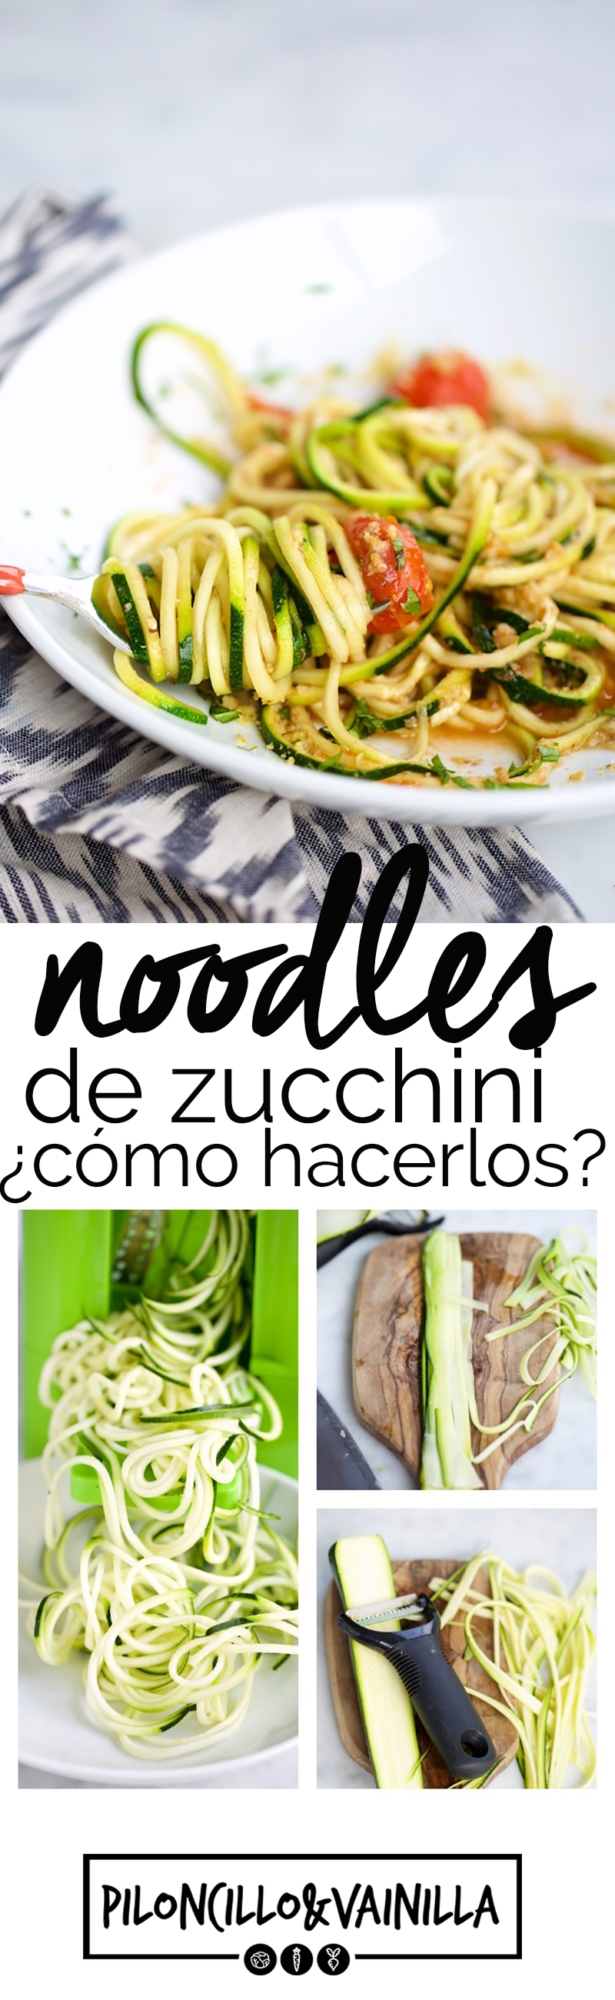 Como hacer noodles de zucchini